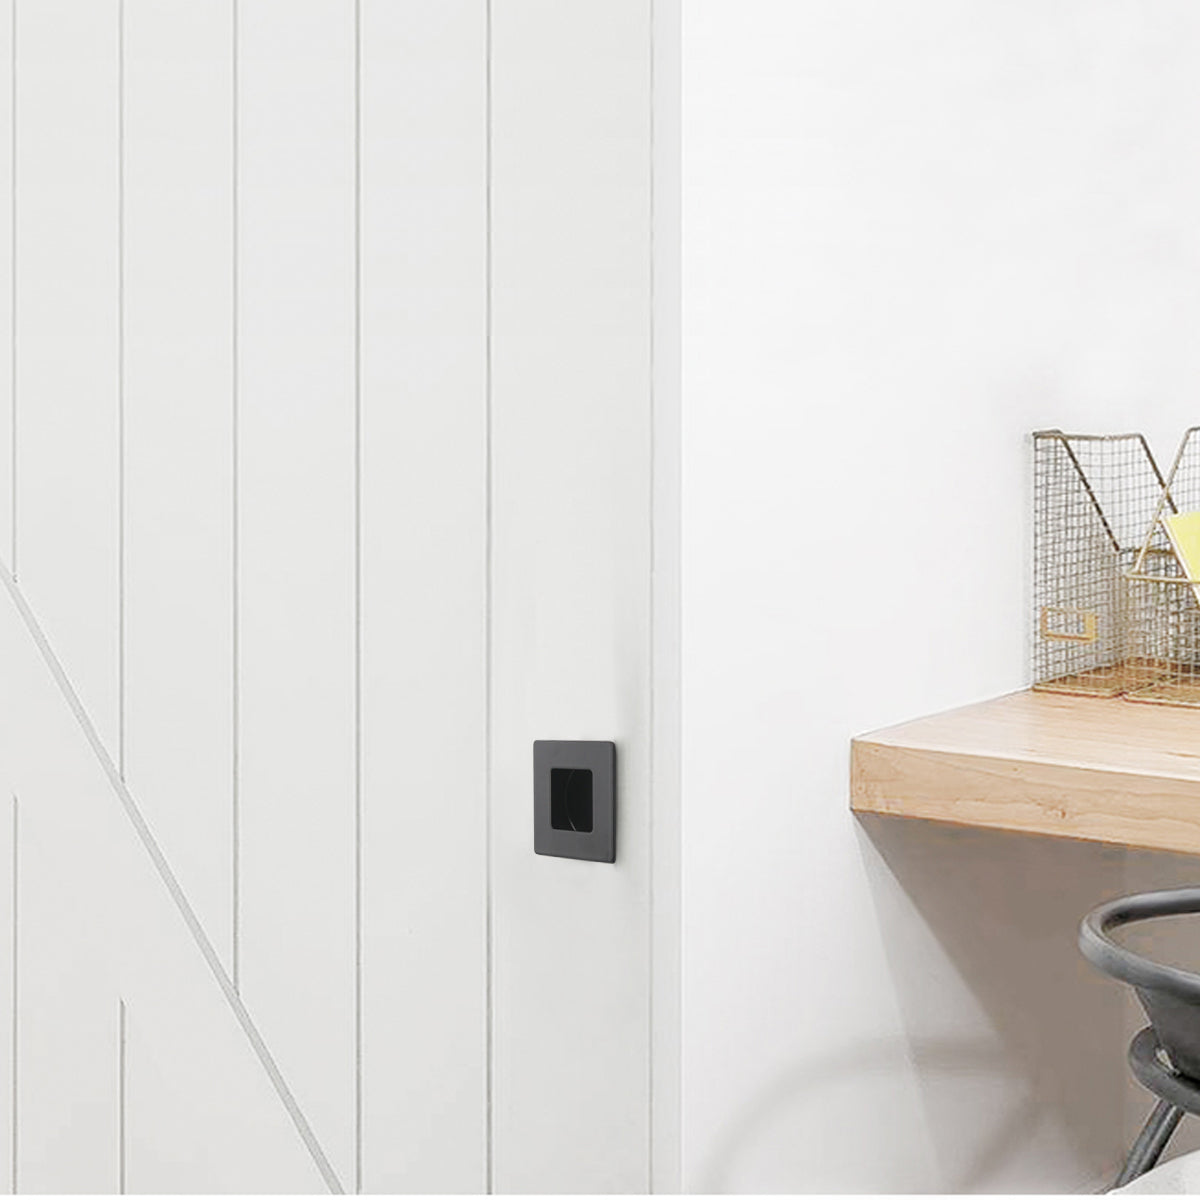 Square Black Flush Pull for Kitchen Cabinet, Sliding Closet and Drawer Finger Pull - Diameter for 2-3/4" and 2" - MH009BK